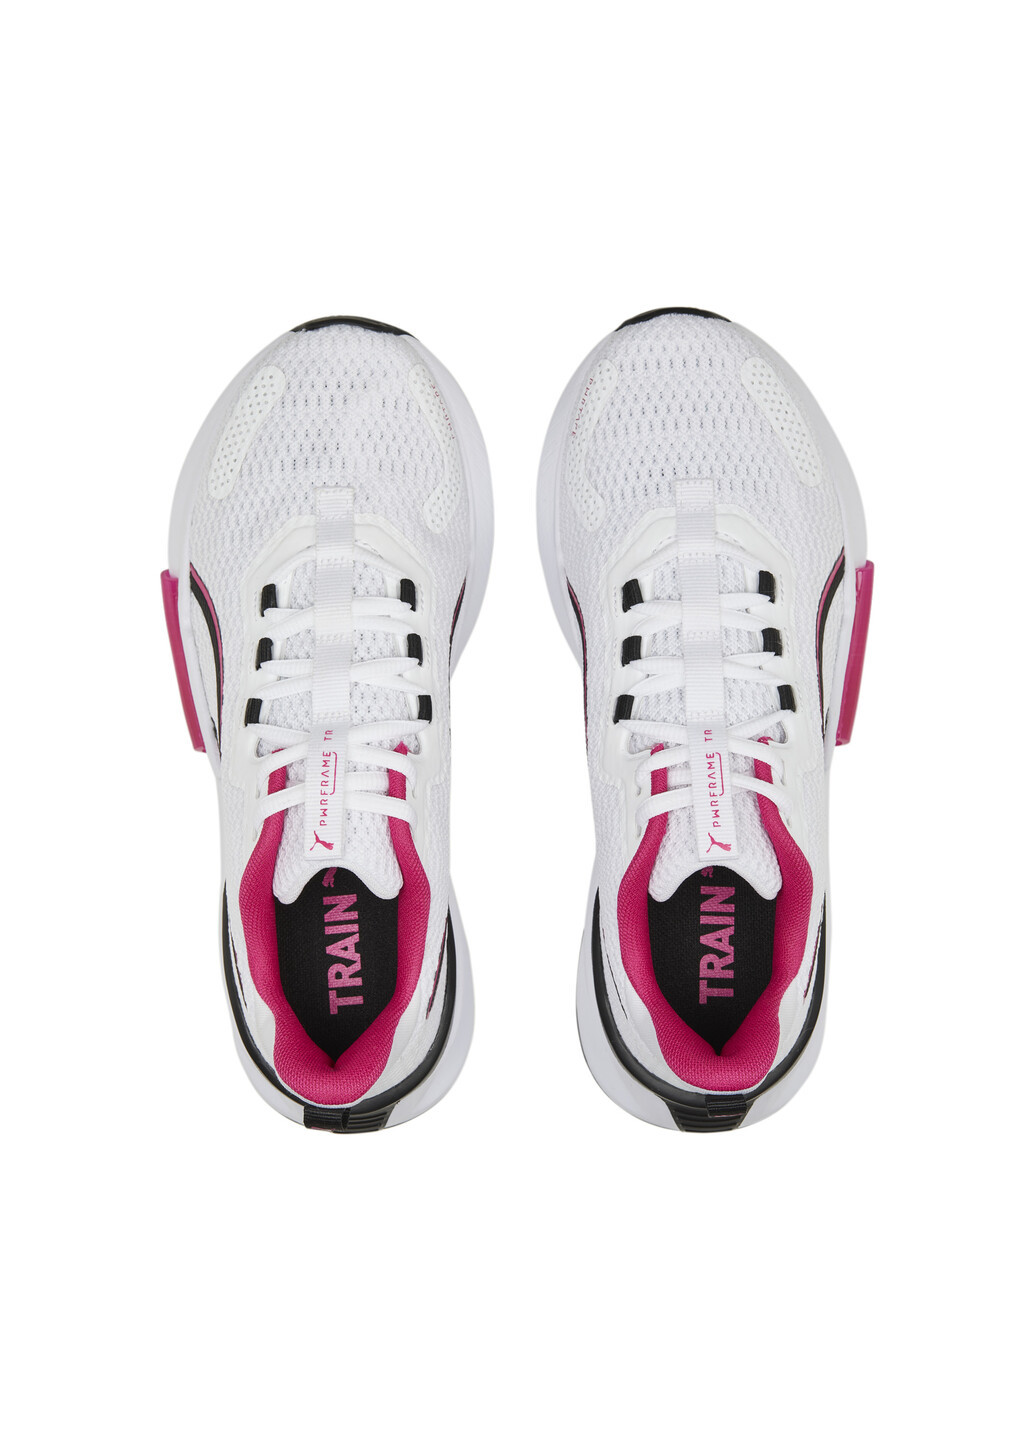 Білі всесезонні кросівки pwrframe tr 2 training shoes women Puma